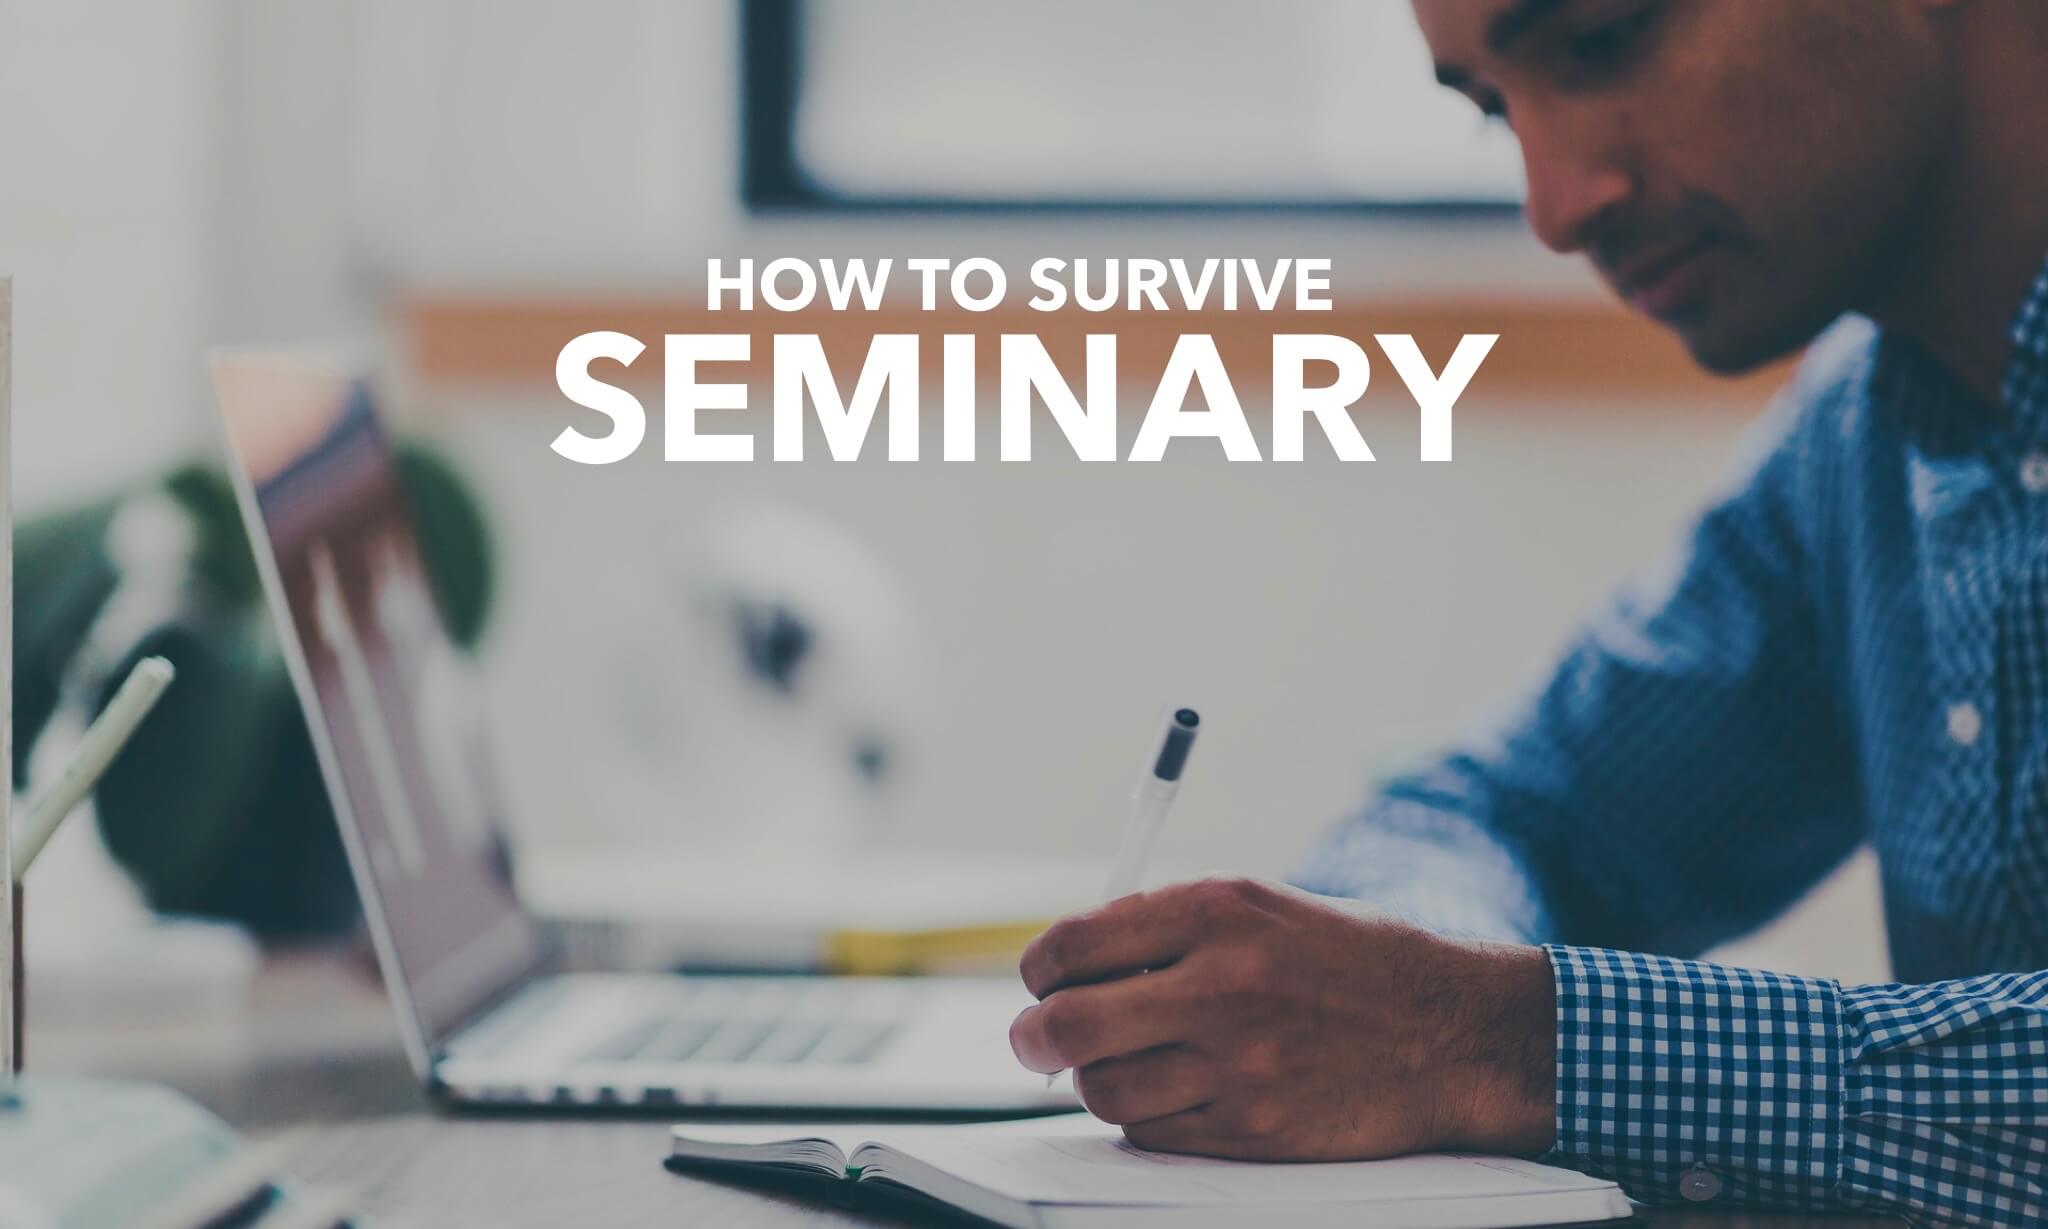 Hot to survive seminary: 15 seminary tips